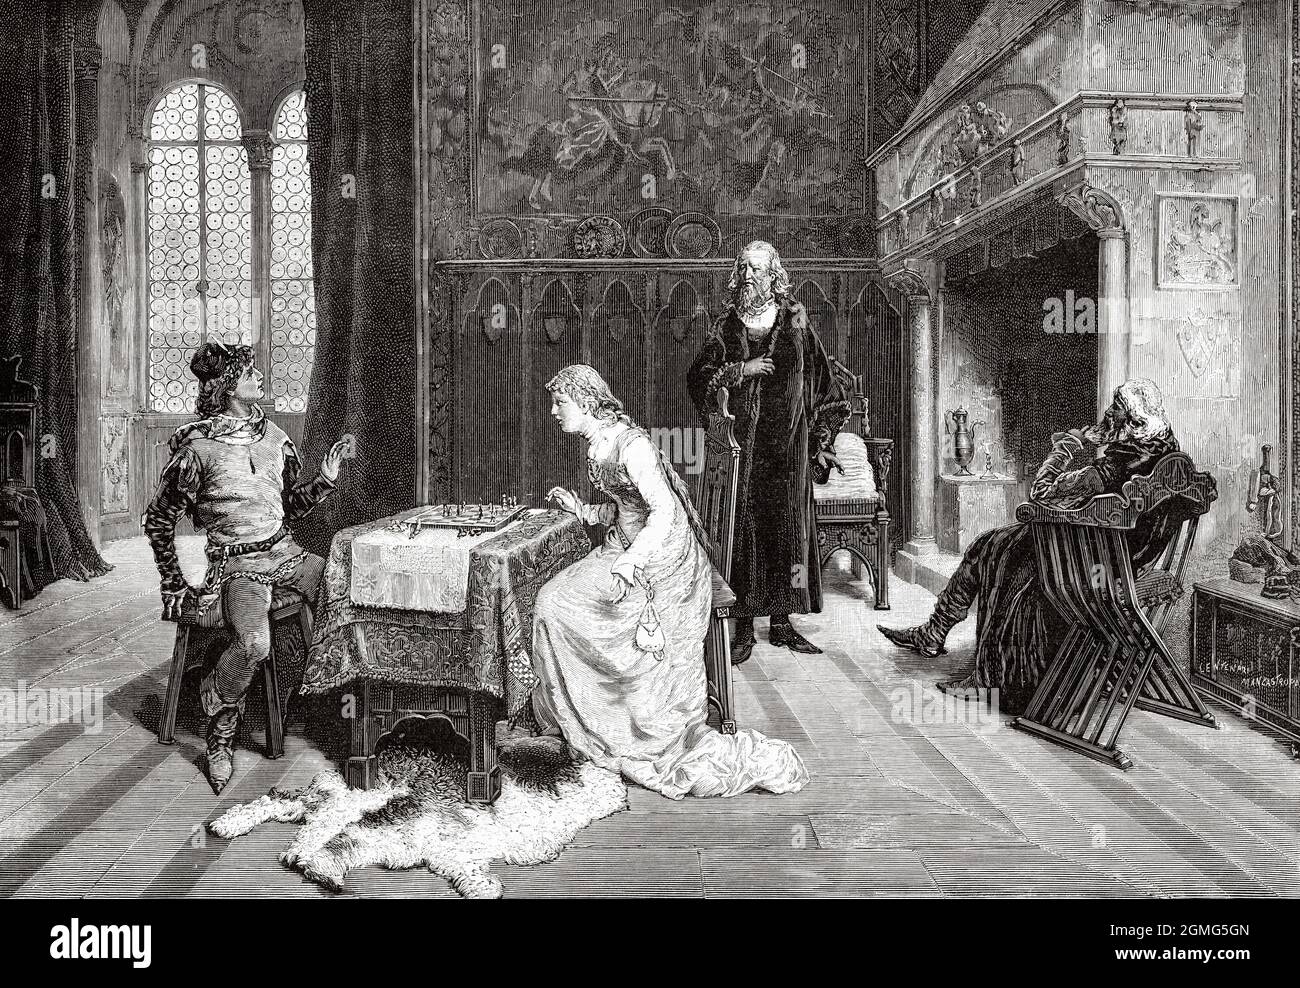 Le jeu d'échecs, peinture de Domenico Induno (1815-1878) était un peintre italien. Ancienne illustration gravée du XIXe siècle de la Ilustración Artística 1882 Banque D'Images